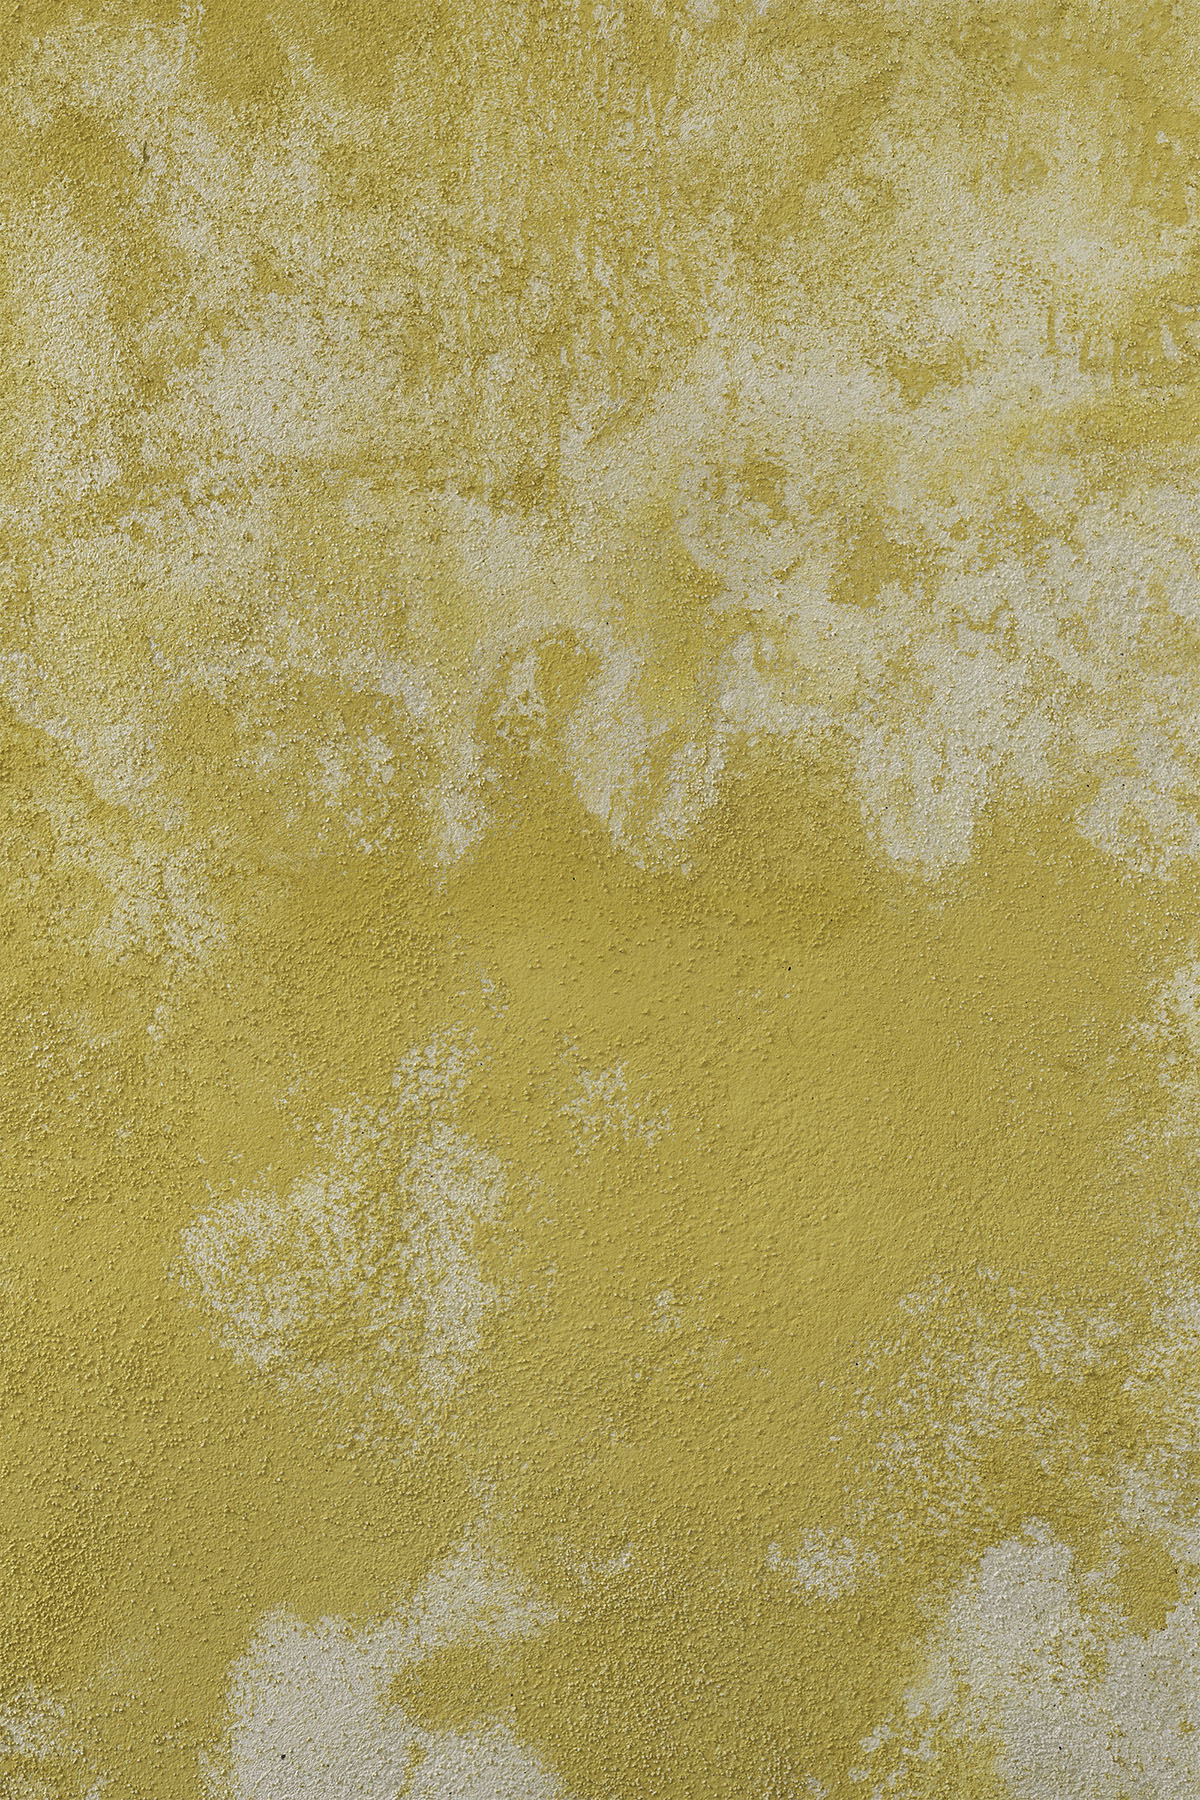 Mediterraanse muur is een gele vinyl fotoachtergrond van vinyl